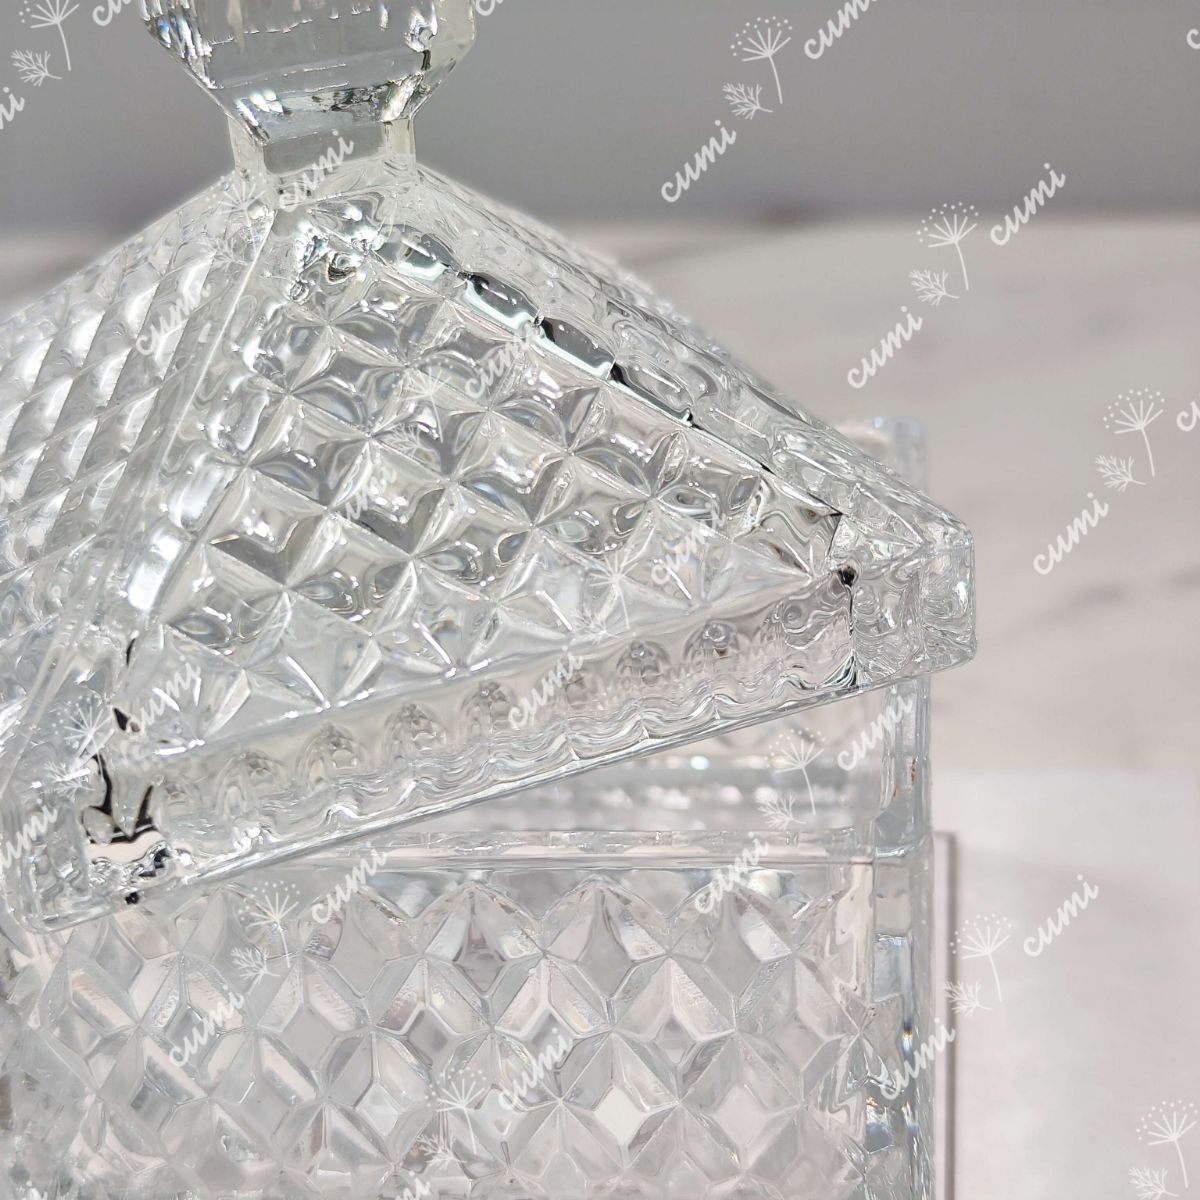 小物入れ 蓋付き エレガント 瑠璃 ガラス製 透明 高級 インテリア プレゼント おすすめ 人気 デザイン 玄関 リビング 記念日 北欧 _画像5